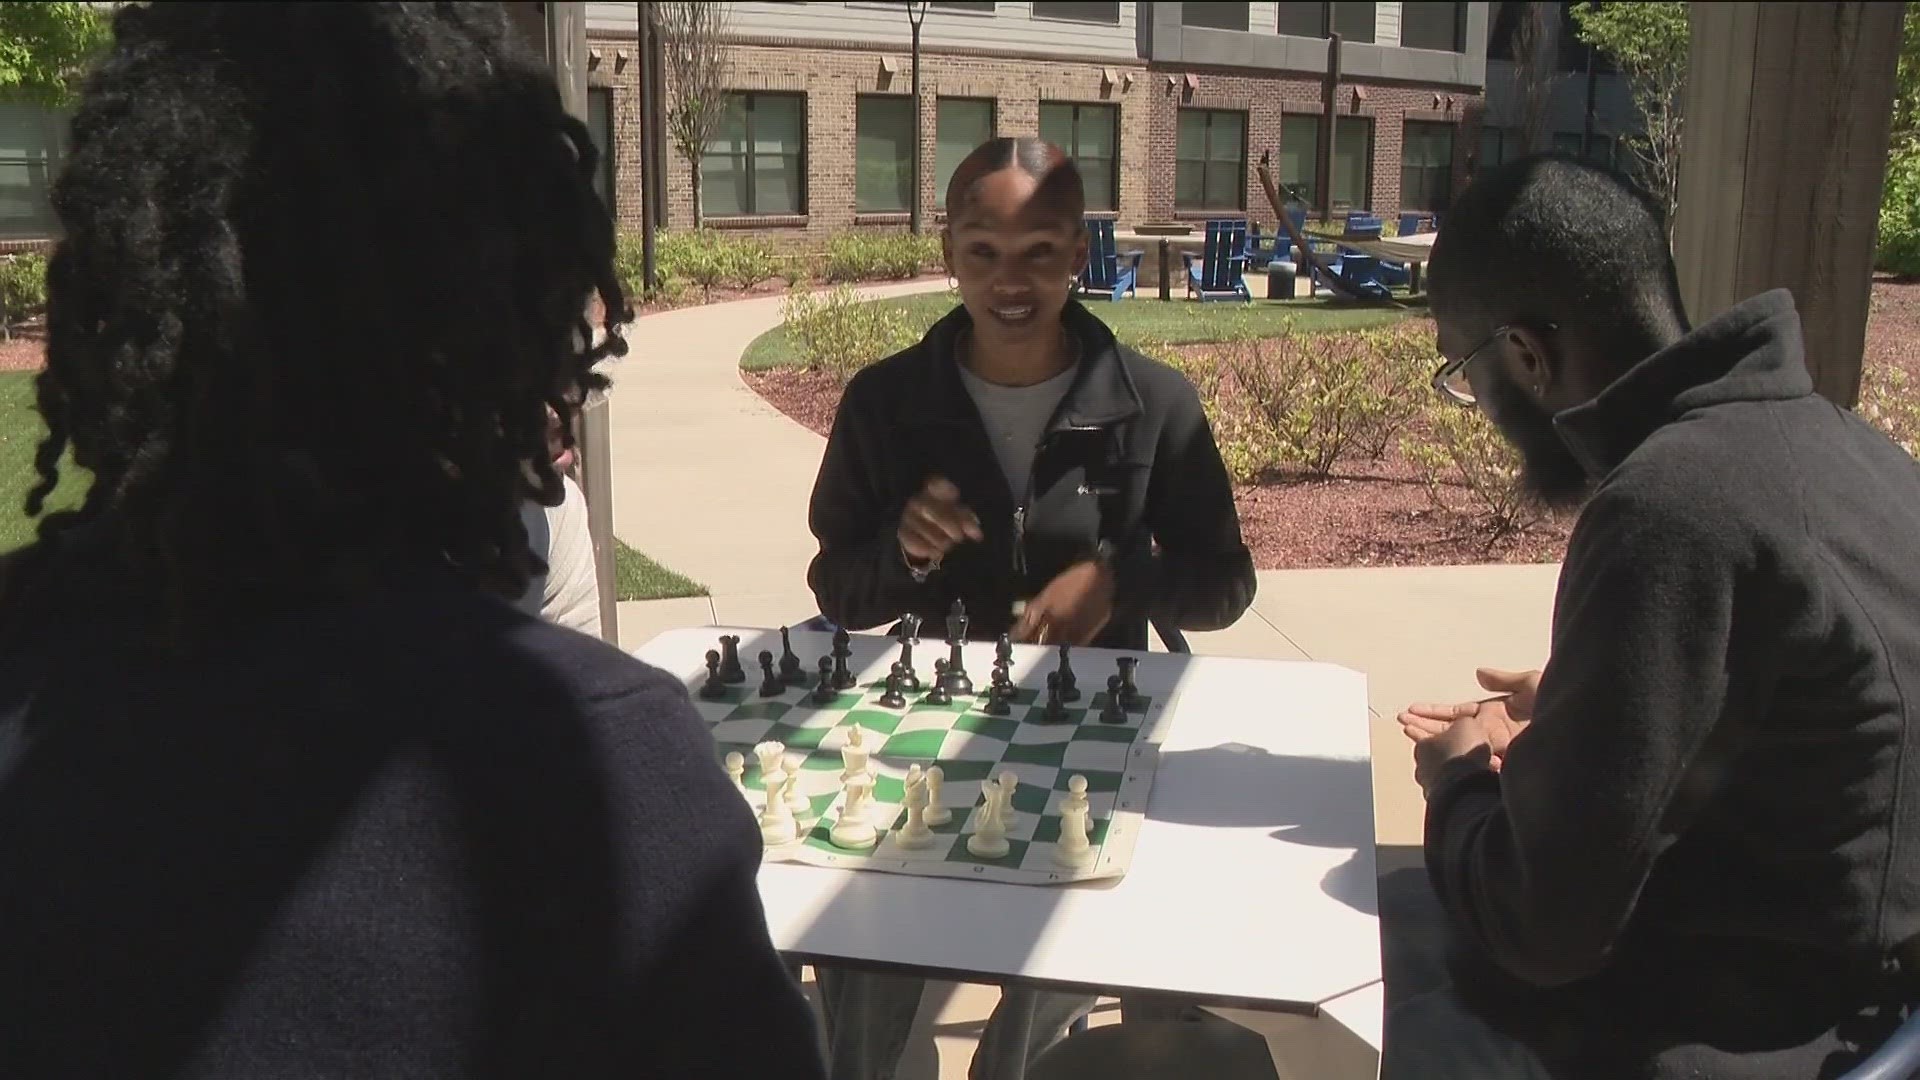 HBCU Chess Classic happening in Atlanta